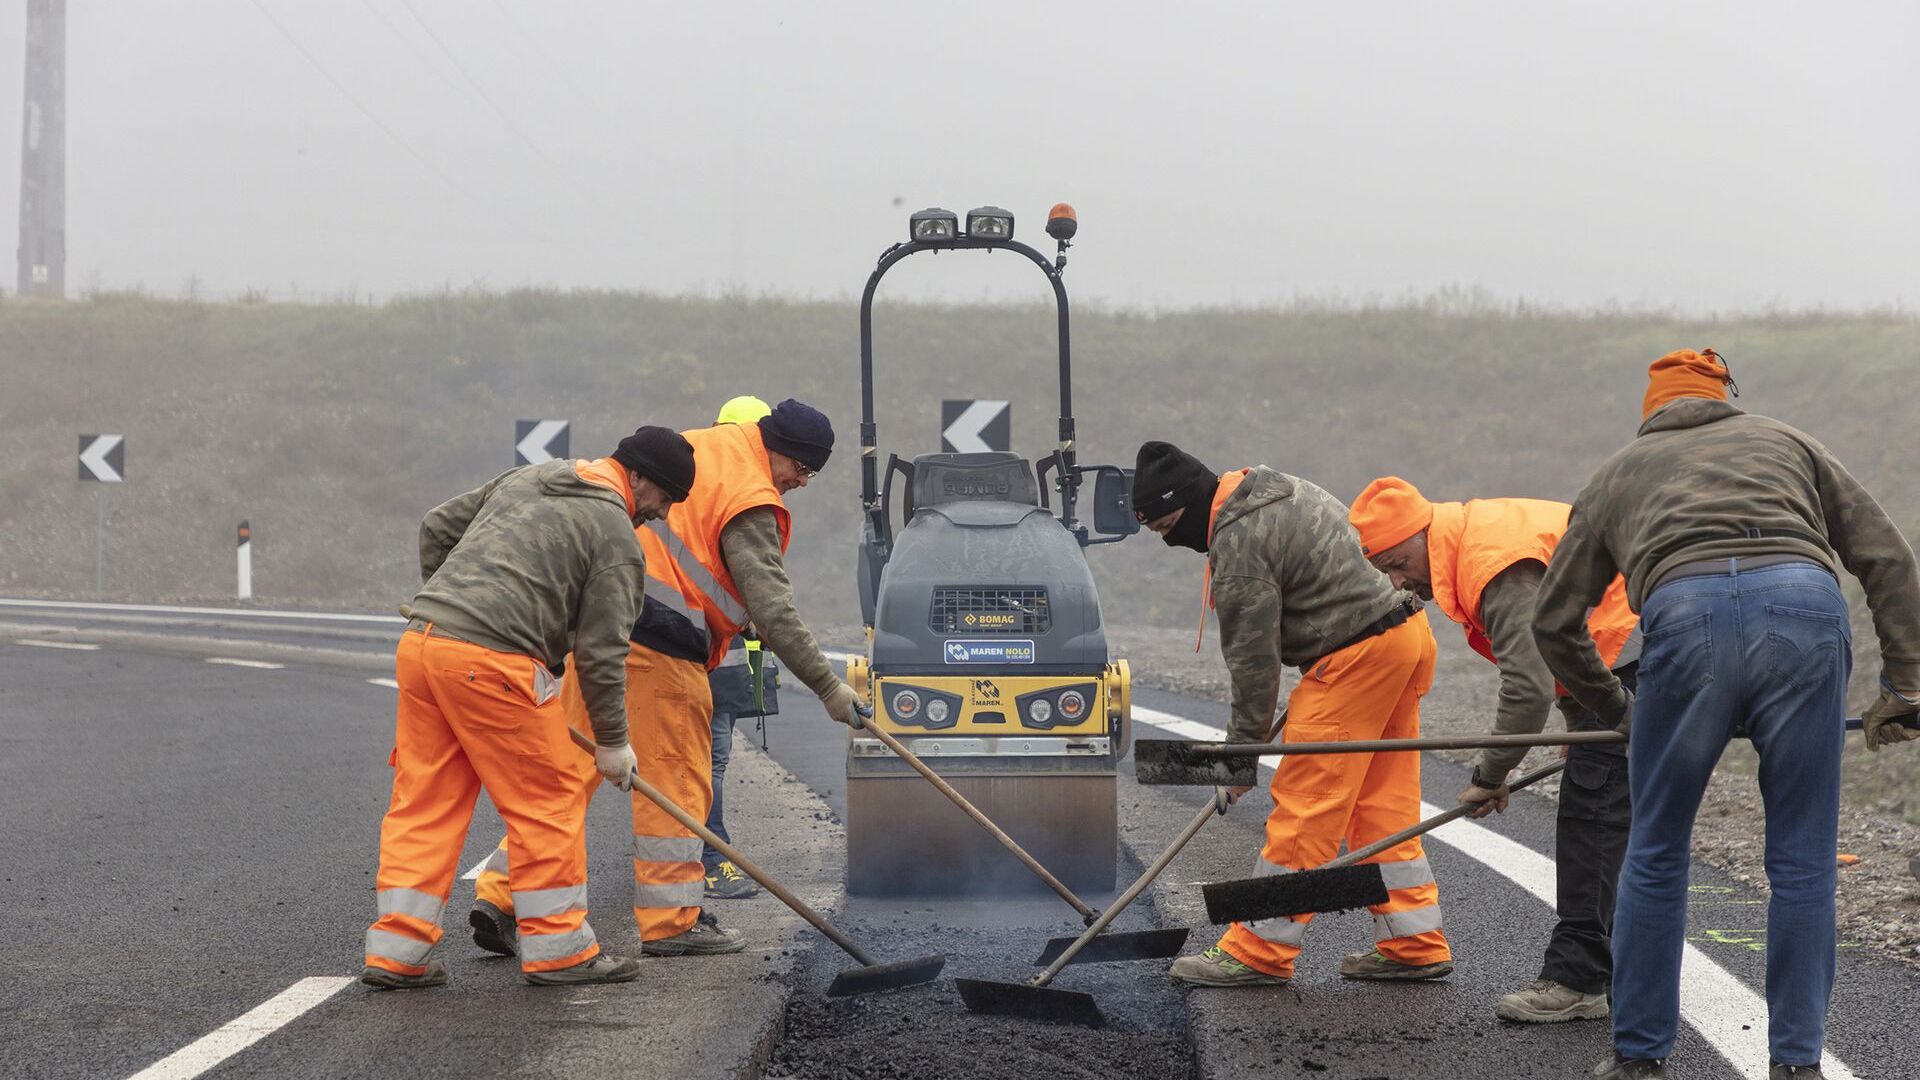 Асфалтирање асфалта „Арене будућности“ у Кјарију, у Ломбардијској провинцији Бреша: то је иновативно кружно коло, у близини аутопута БРЕБЕМИ А35, на којем се тестира индукционо пуњење електричних возила која путују на њима посвећеним тракама испод чијег асфалта су постављене петље